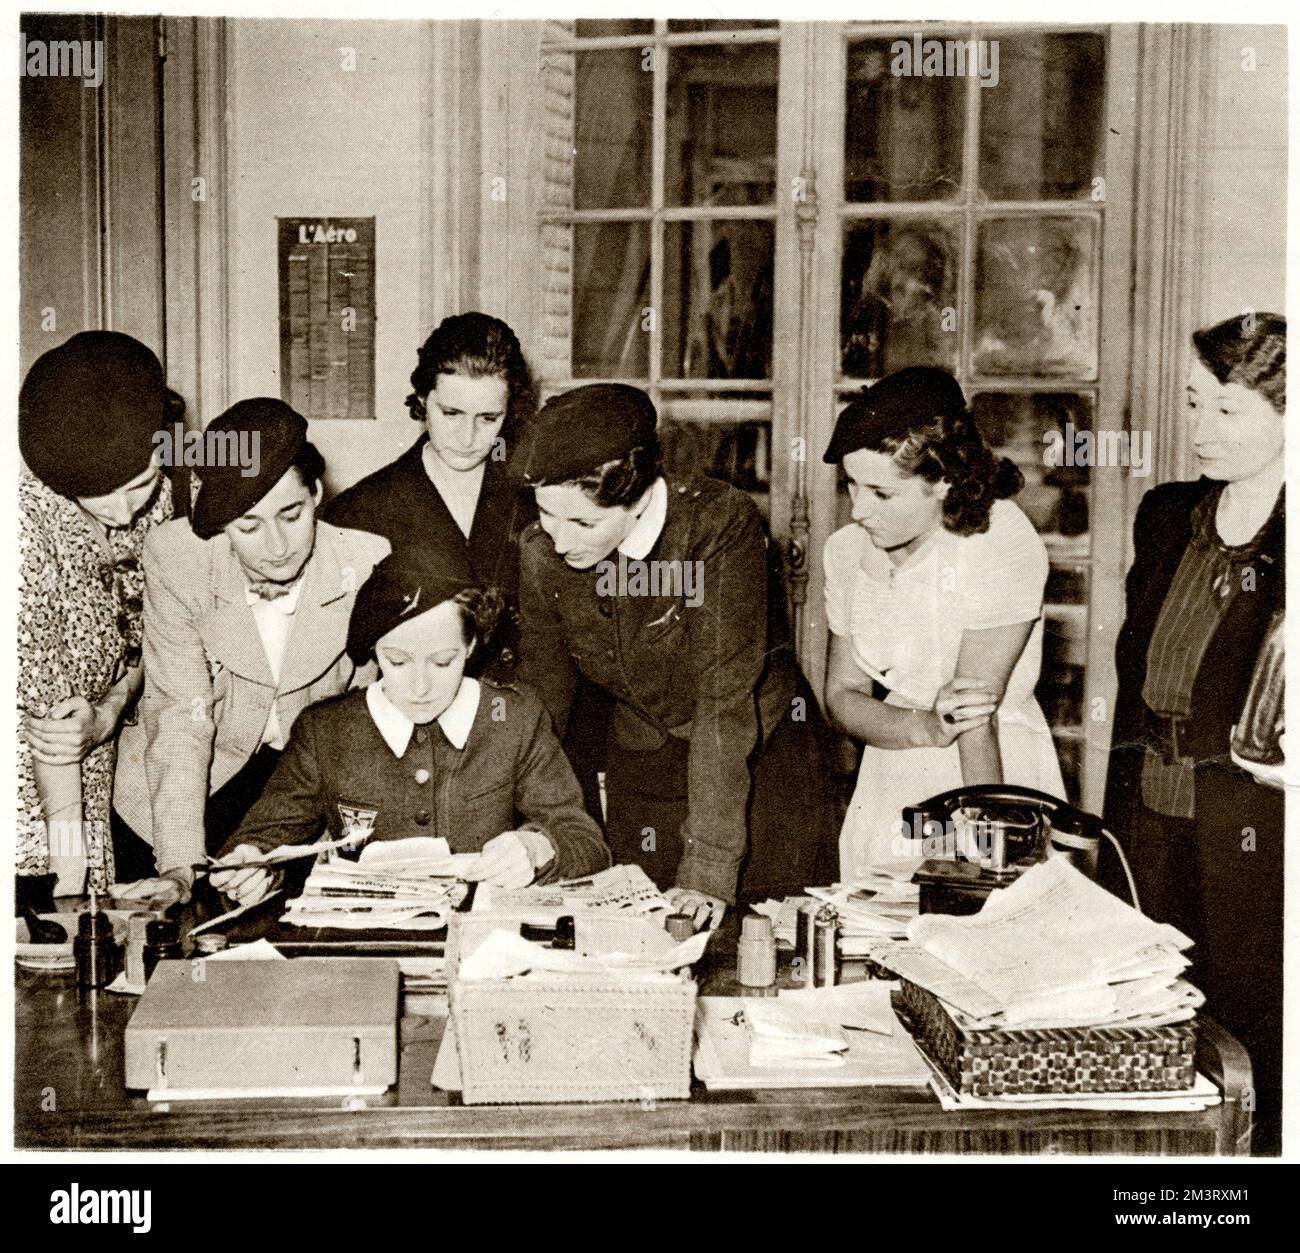 Un gruppo di donne francesi impegnate a sottoscrivere un lavoro di difesa passiva e Croce Rossa poco dopo lo scoppio della guerra nel settembre 1939. Data: Settembre 1939 Foto Stock